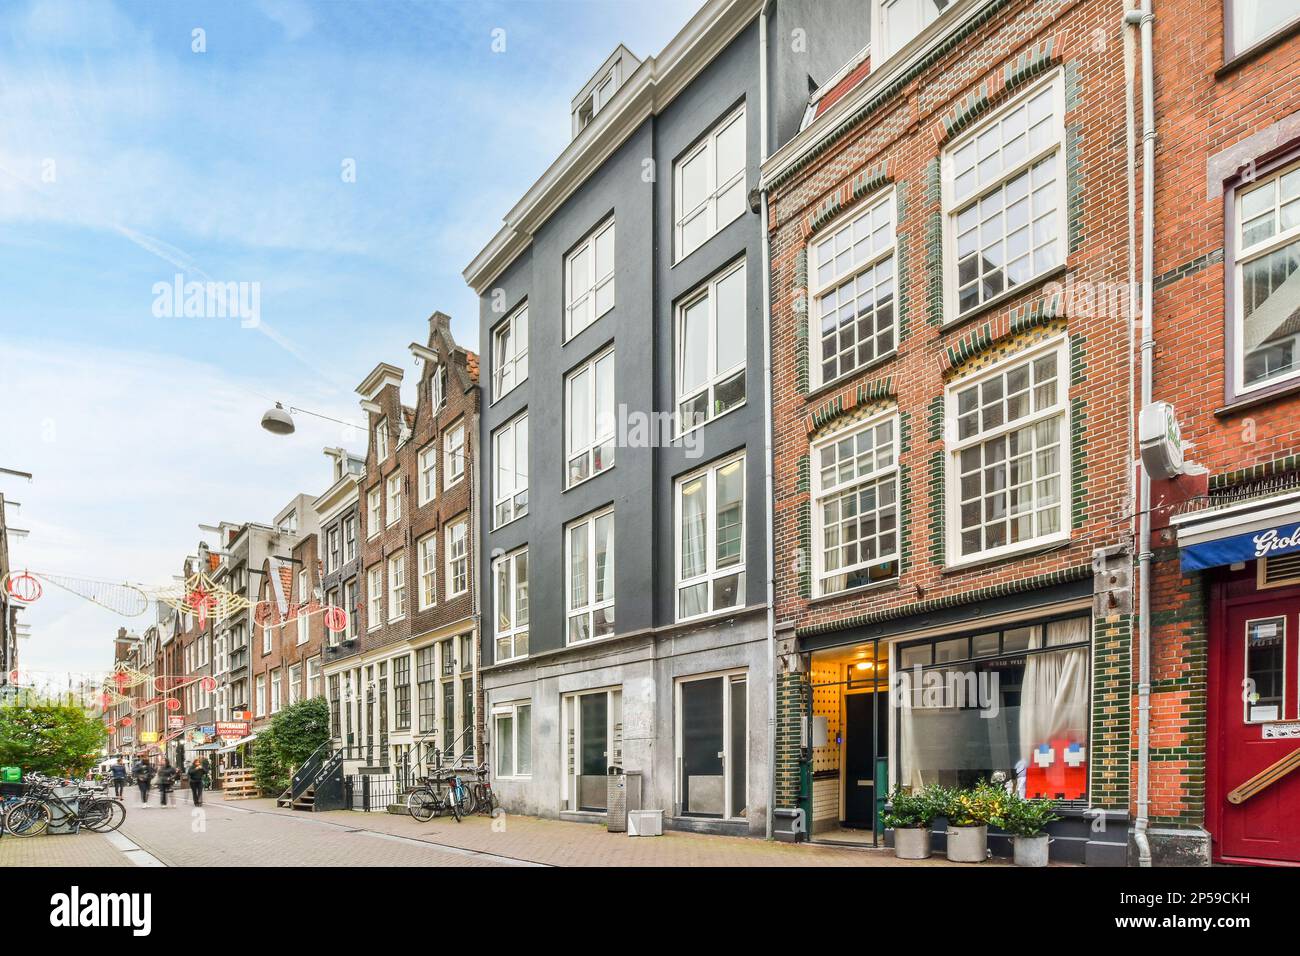 Amsterdam, pays-Bas - 10 avril 2021 : rue de la ville avec des bâtiments des deux côtés et des vélos garés dans les allées le long de la route Banque D'Images